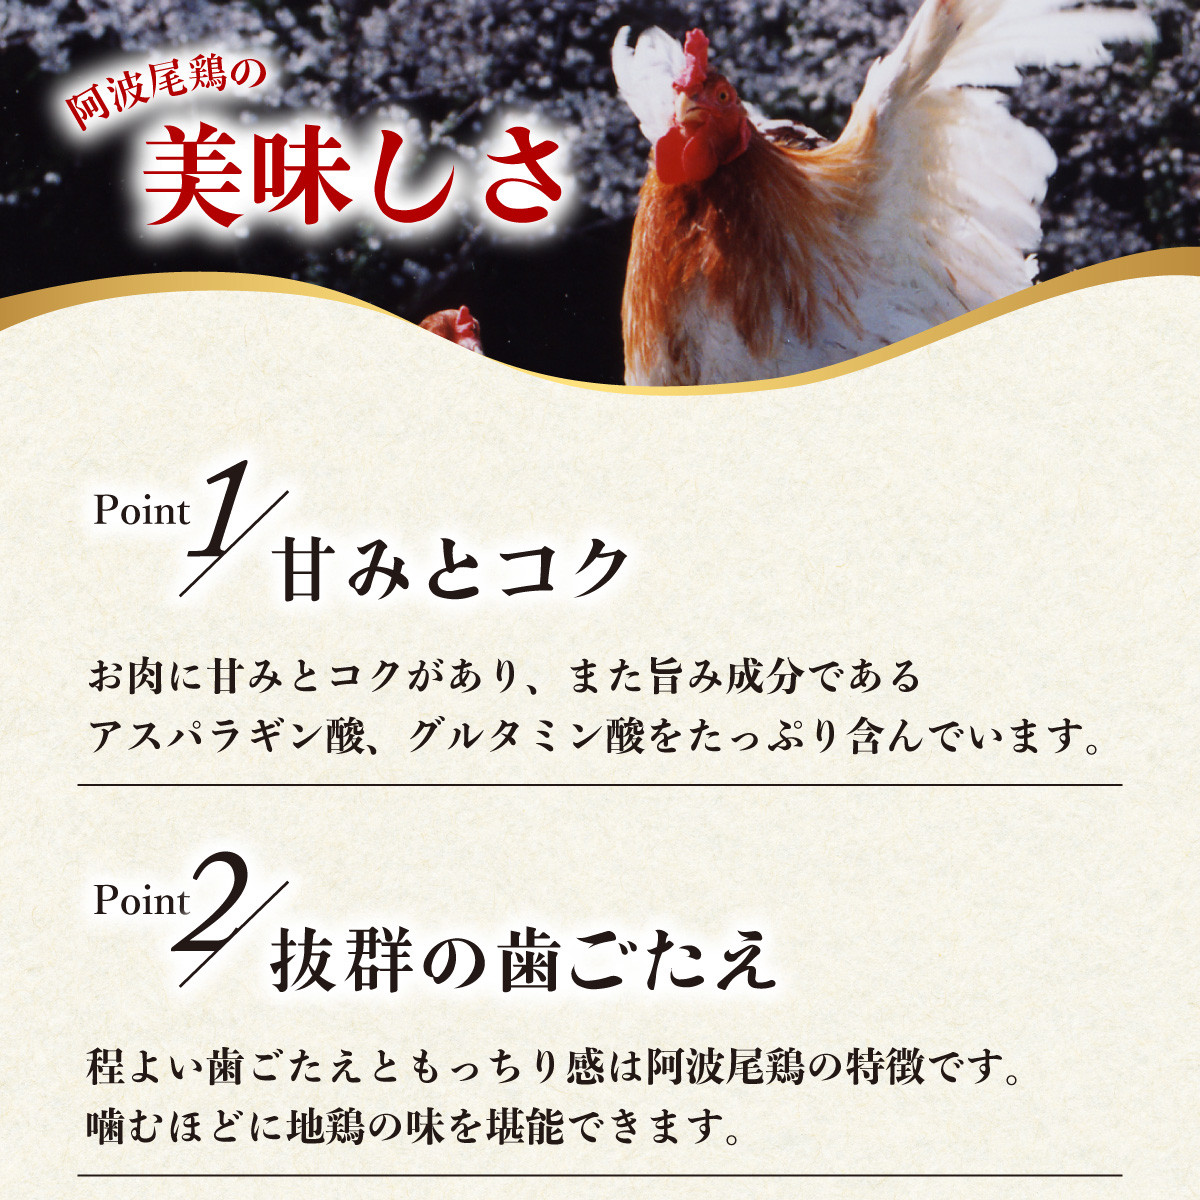 【阿波尾鶏バラ凍結定期便 3か月連続】阿波尾鶏 もも肉 切り身 バラ凍結 3kg×3回 計9kg 鶏肉 鶏もも 阿波尾鶏 冷凍 地鶏